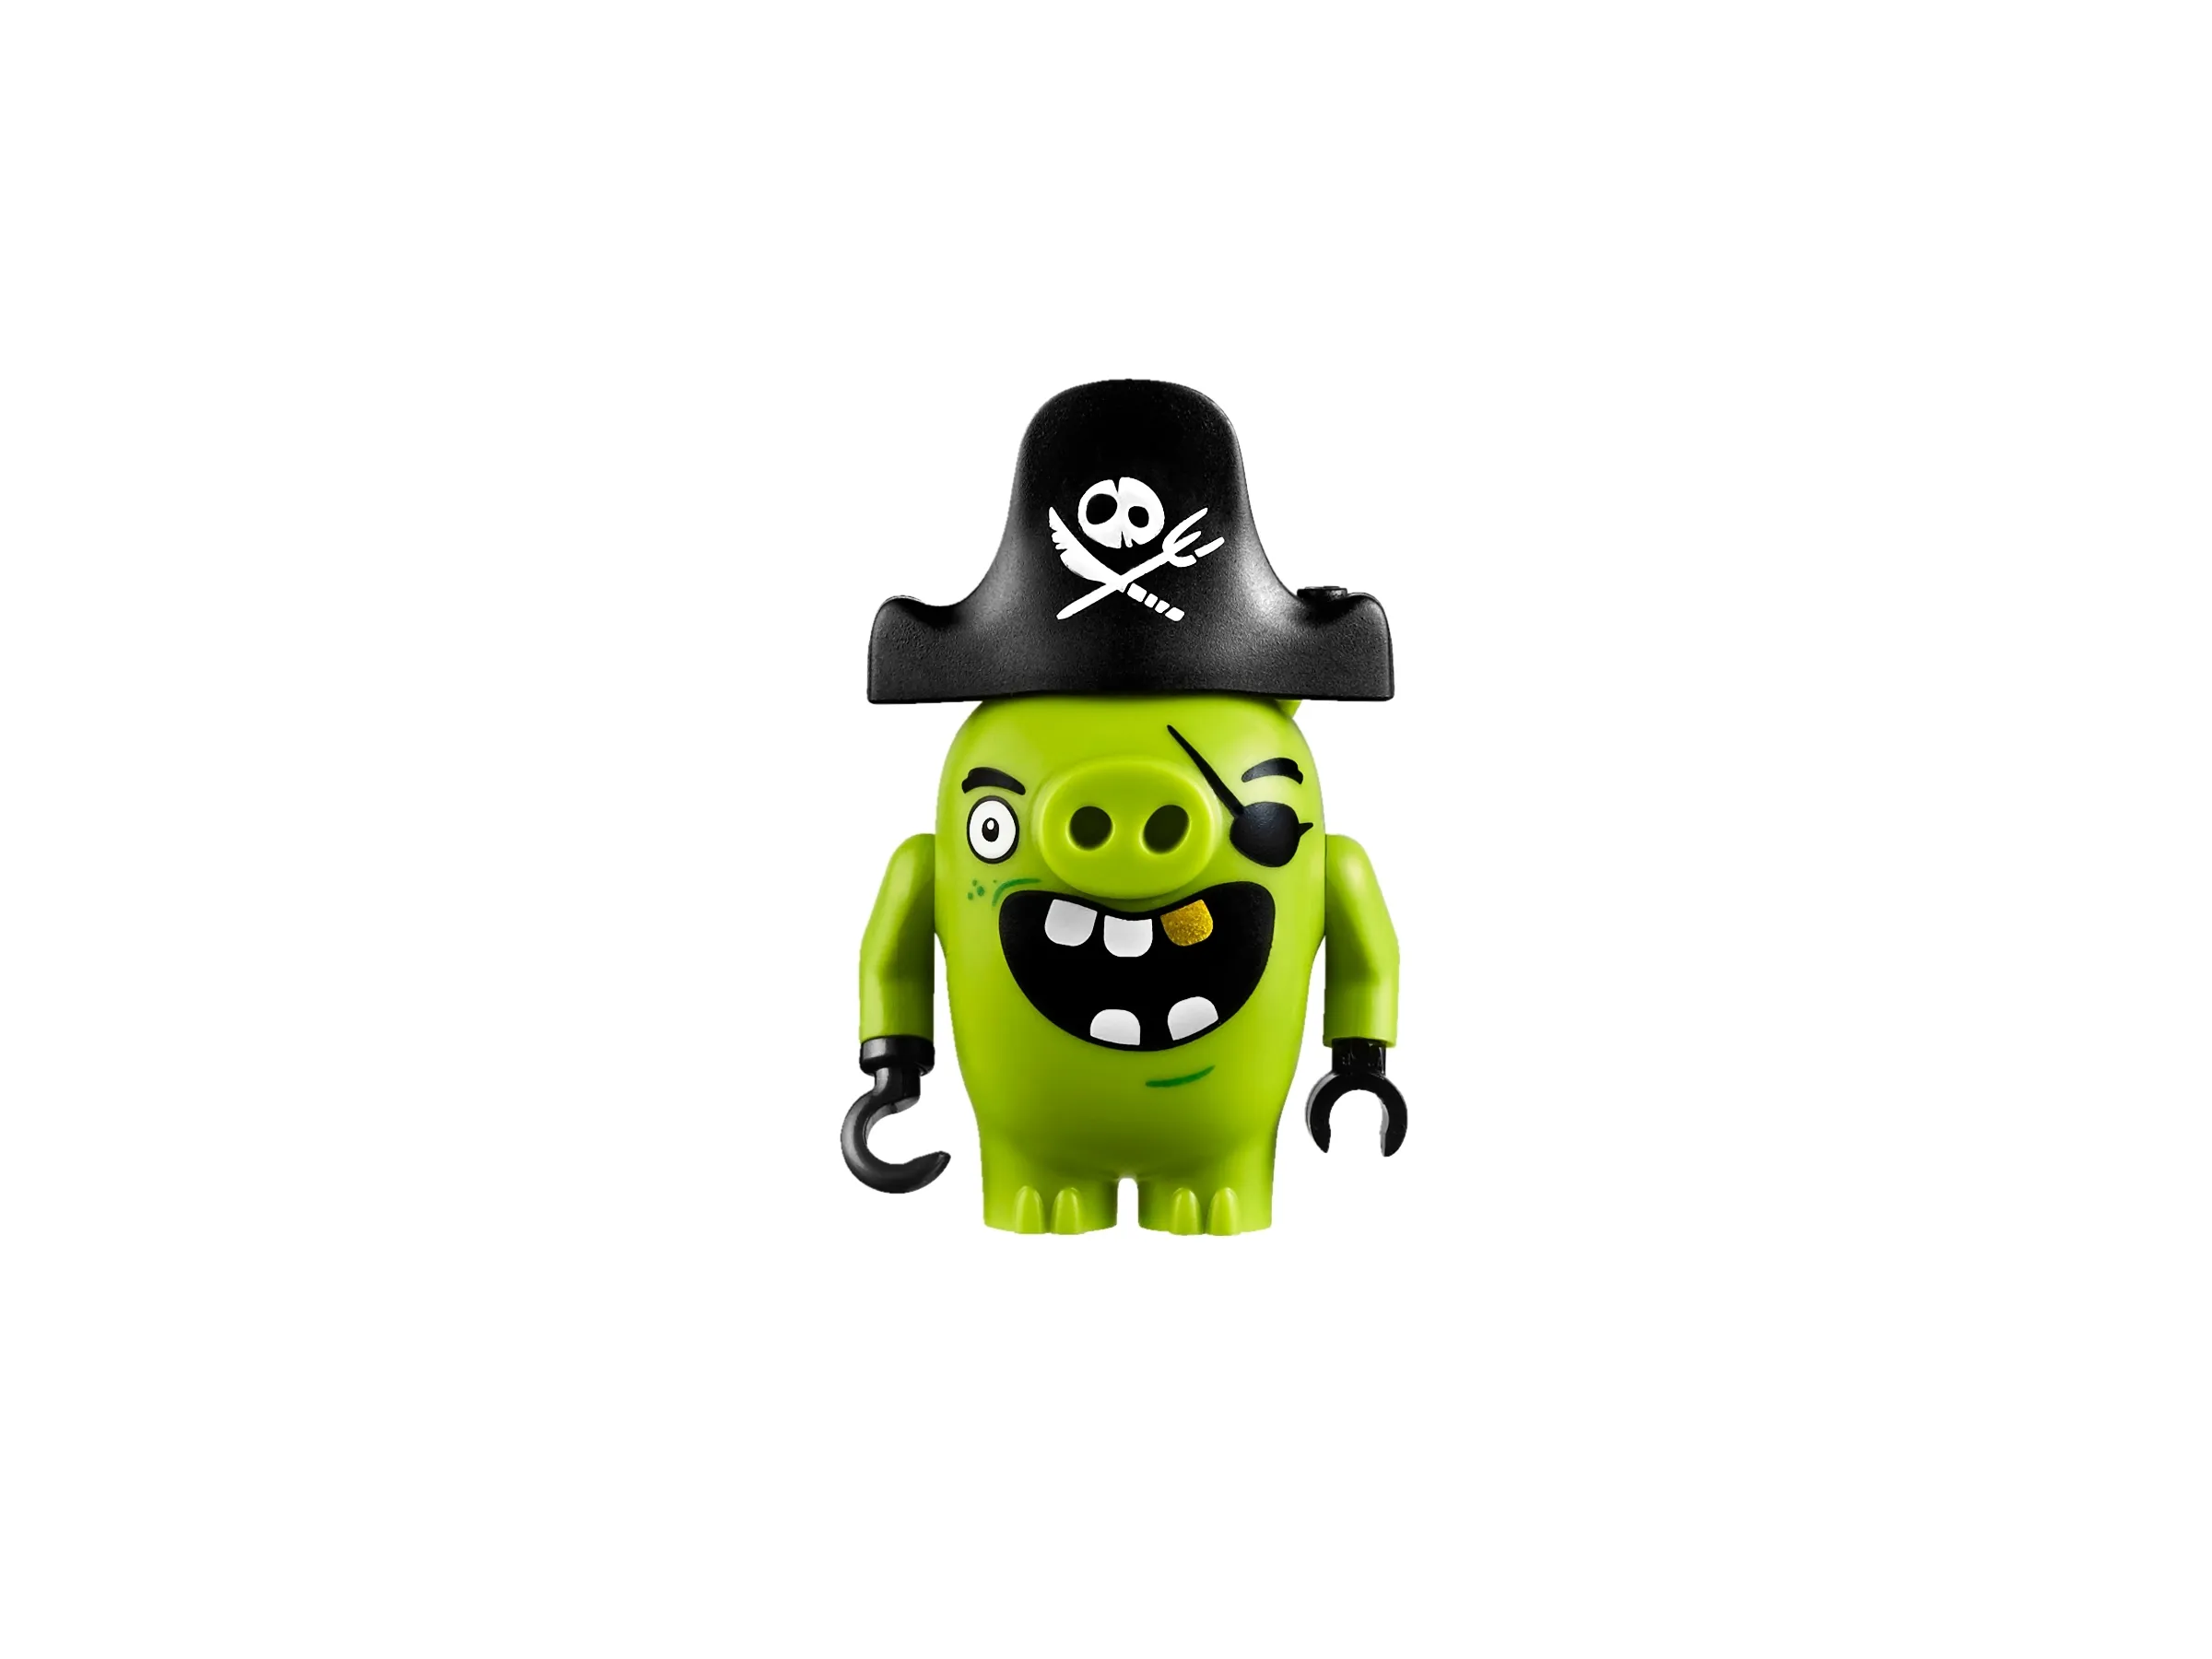 LEGO Set 75825-1 Piggy Pirate Ship (2016 Angry Birds)